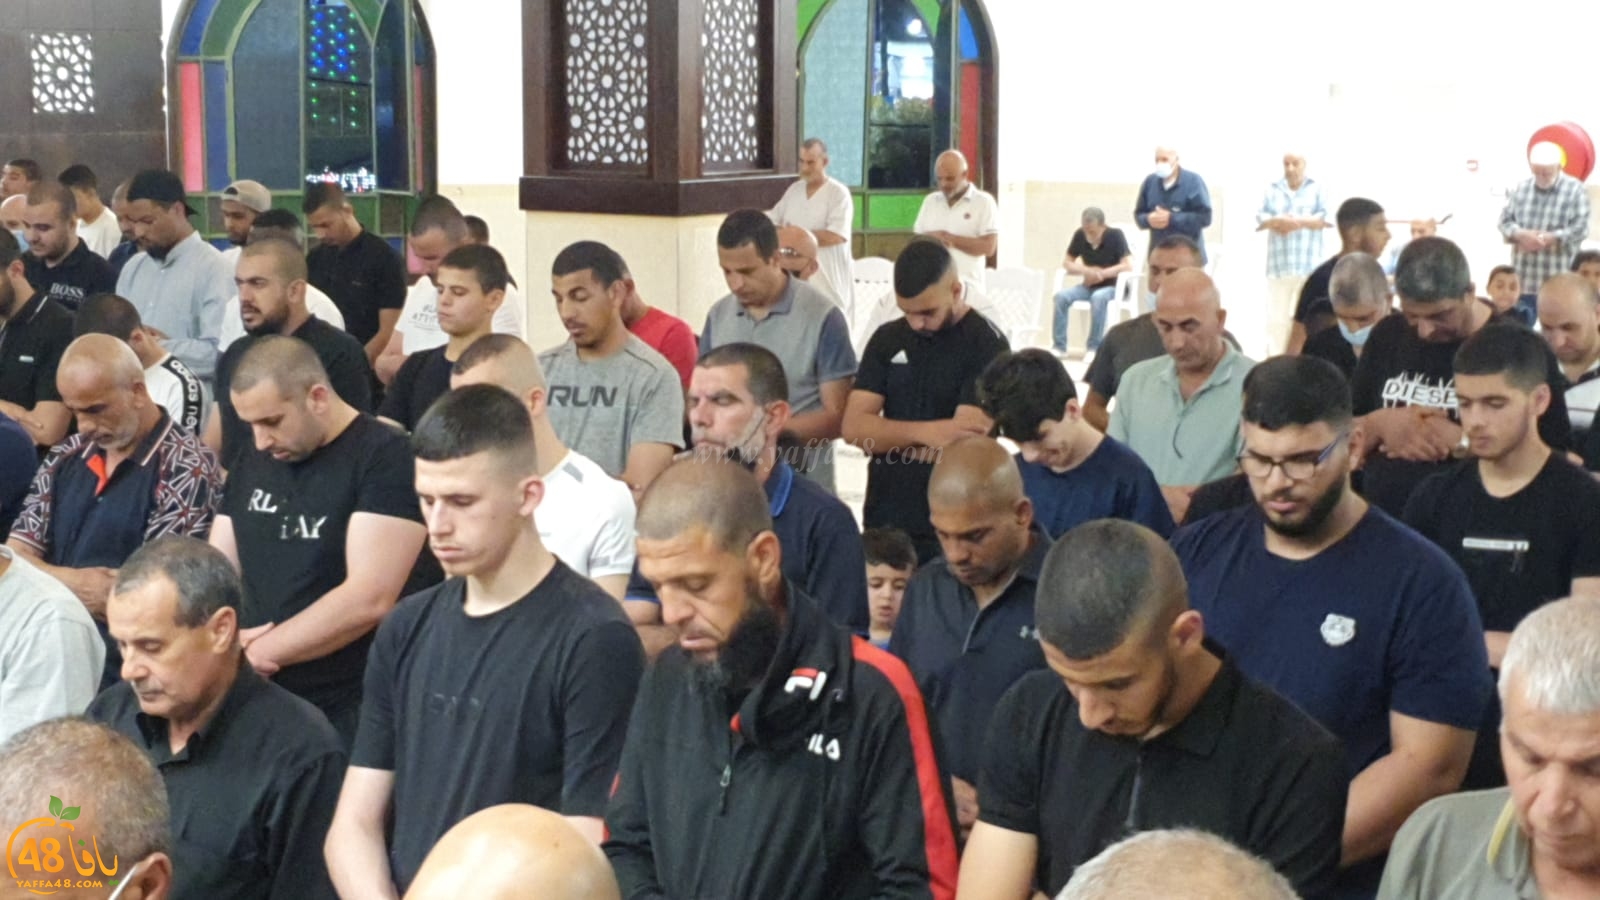 فيديو وصور: شعائر صلاتي العشاء والتراويح من مسجد النور بمدينة اللد